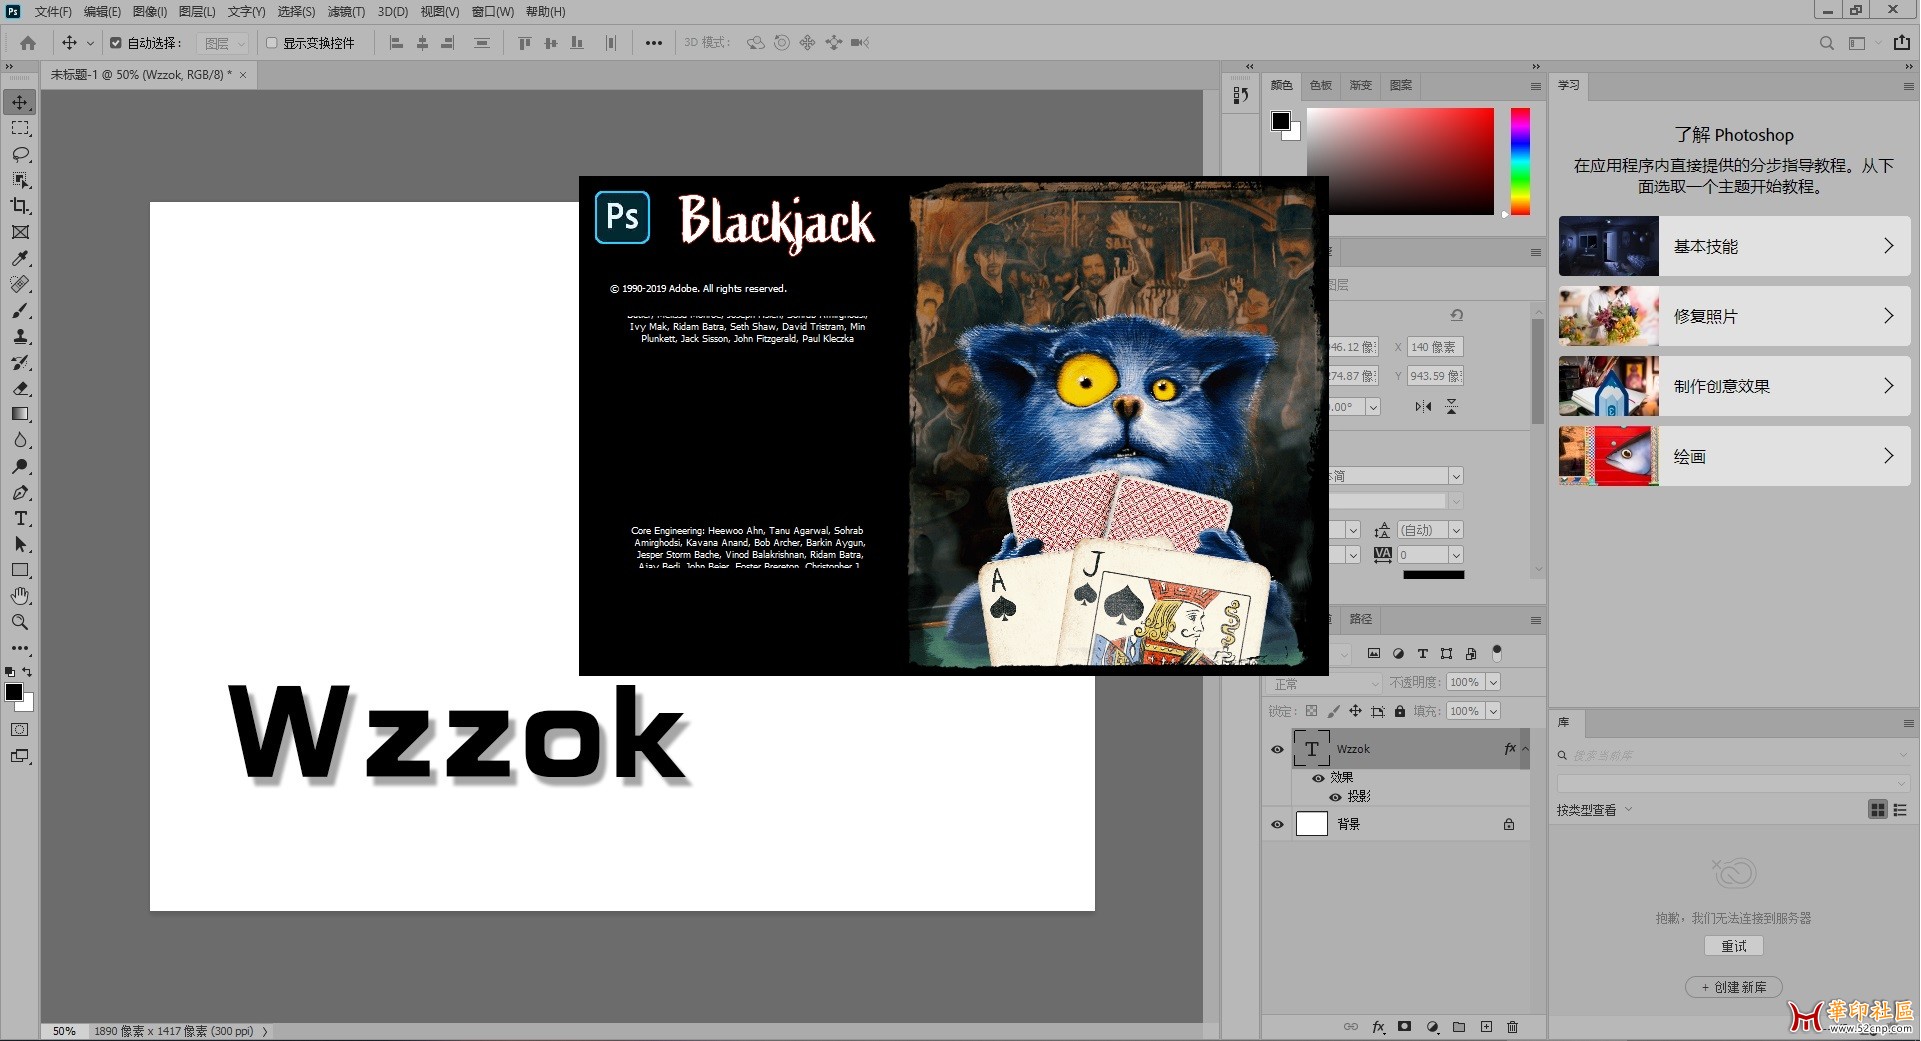 Adobe Photoshop 2020 v21.0.0.37_Wzzok.rar  2G{tag}(4)